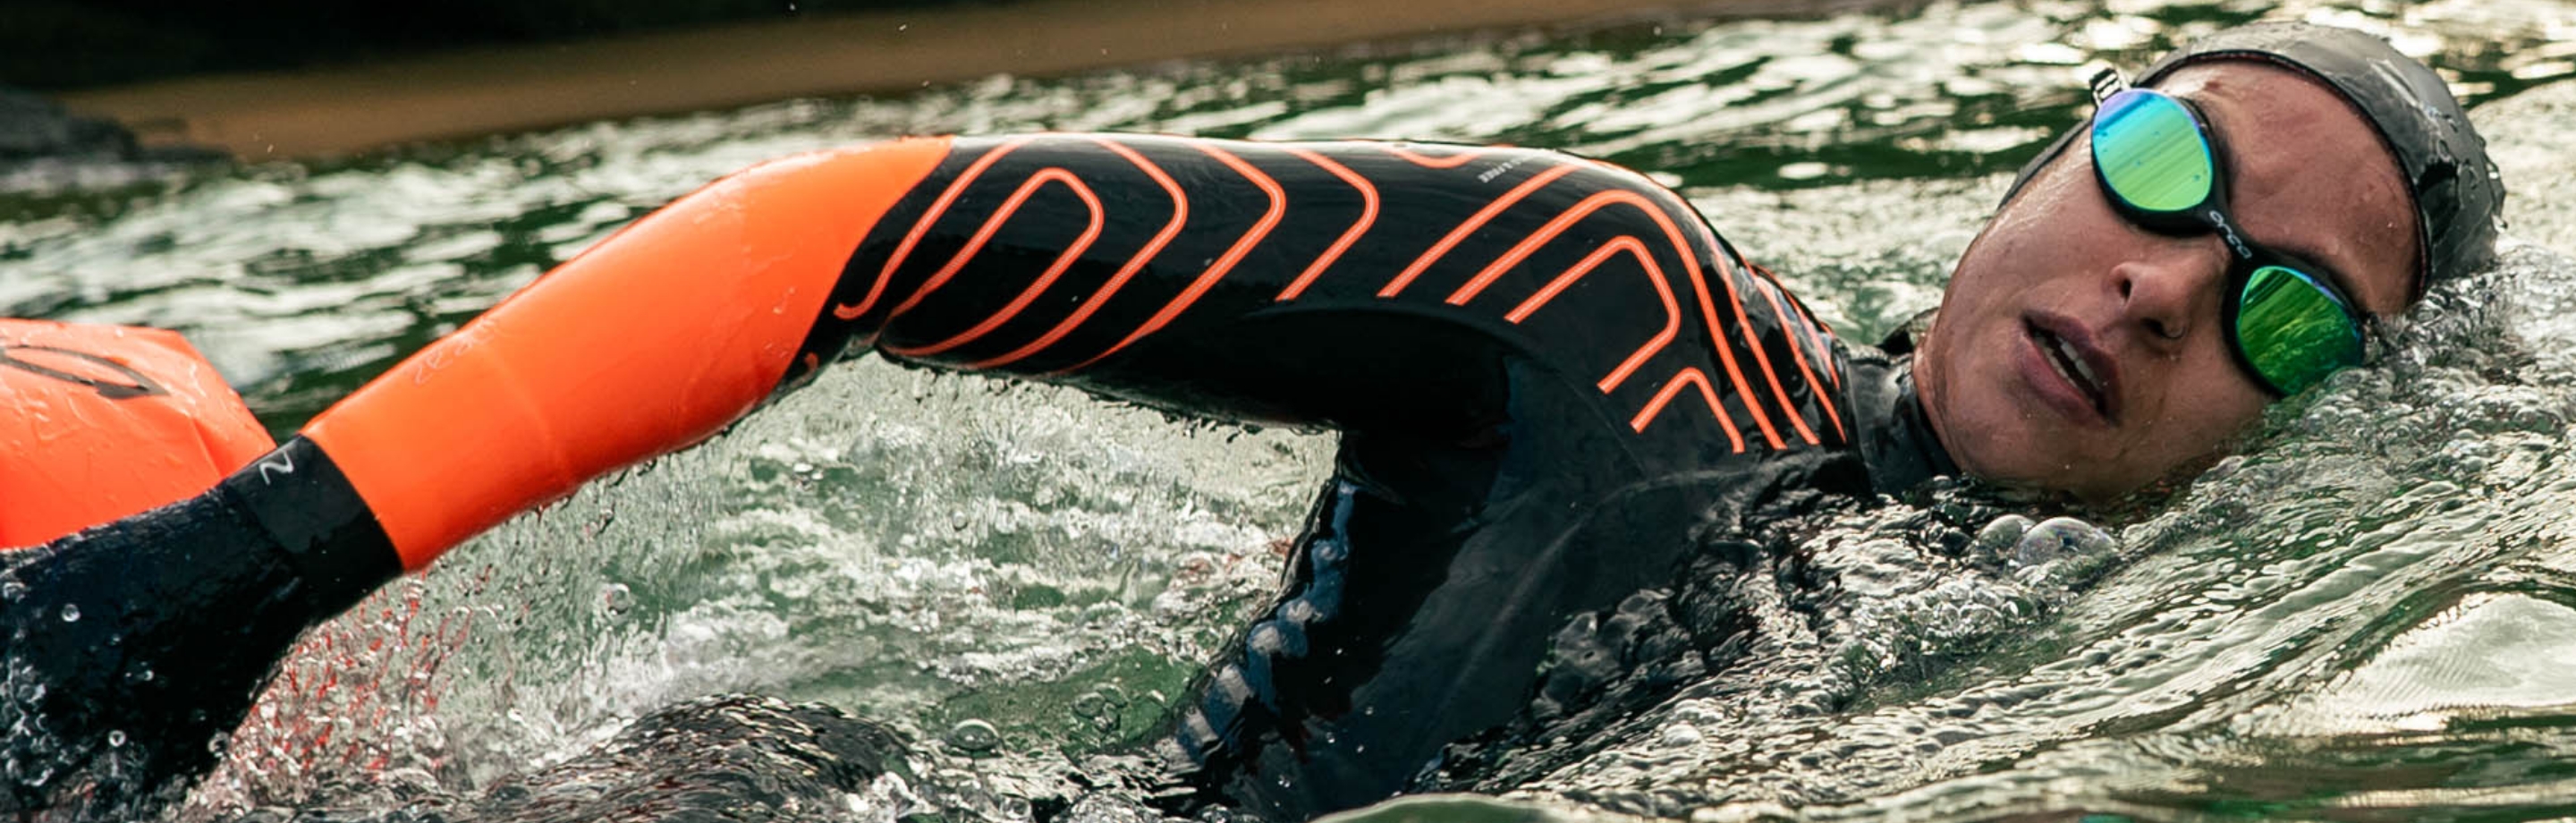 Orca - Abbigliamento ed equipaggiamento premium per Triathlon, SwimRun e nuoto in acque libere